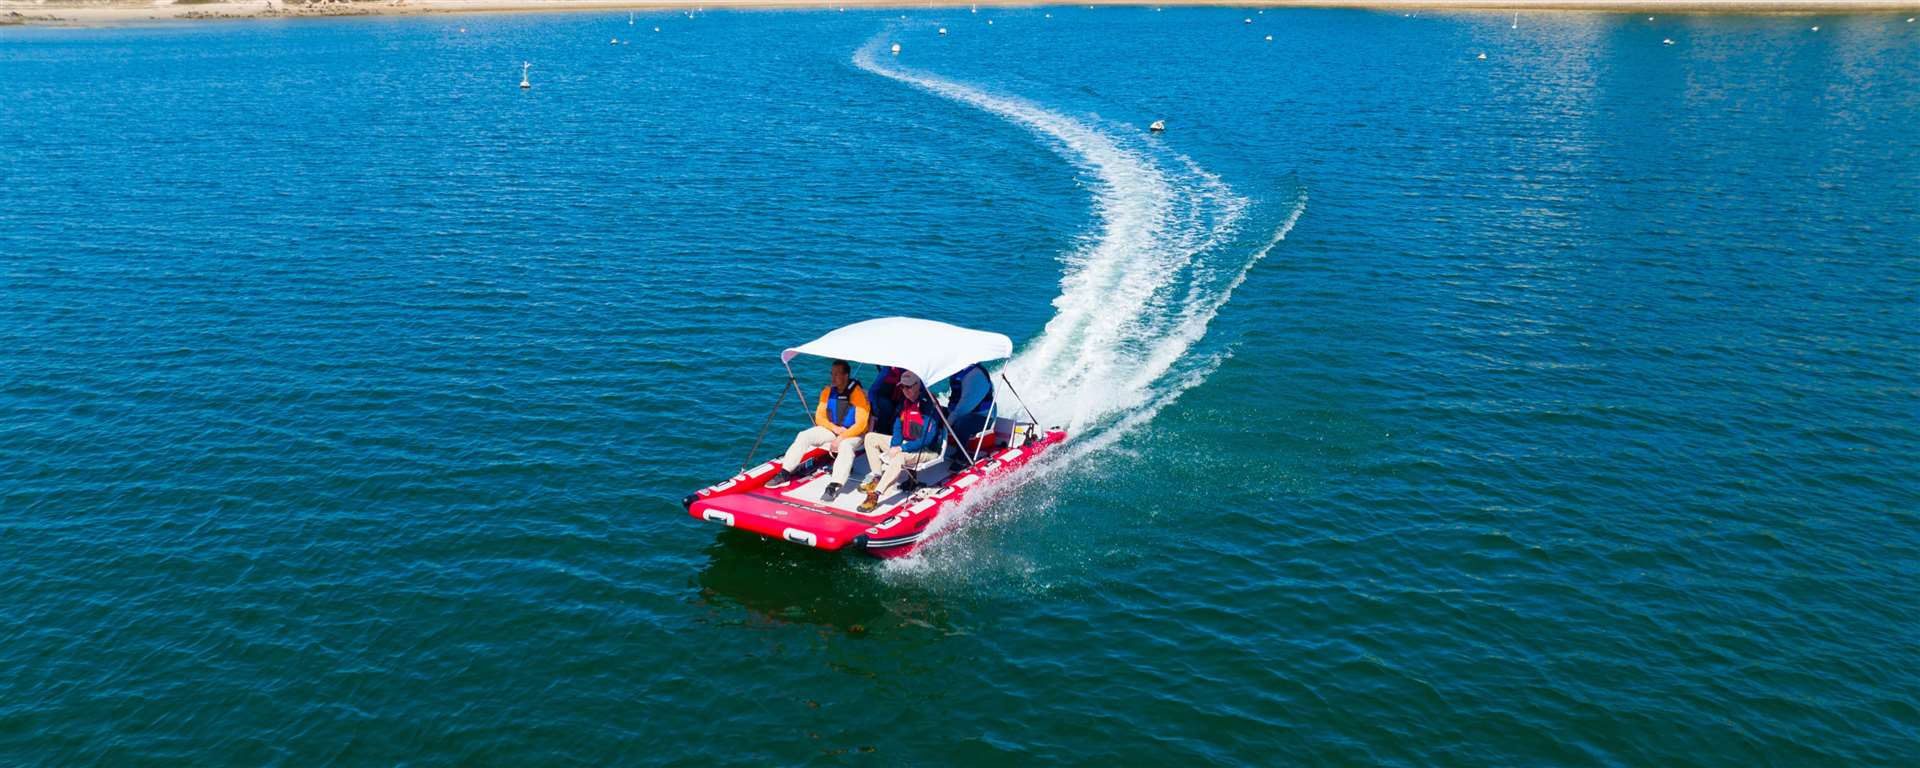 SeaEagle Inflatable Catamaran Swivel Seat Package FastCat14™ Catamaran Inflatable Boat - Honda Motor Package